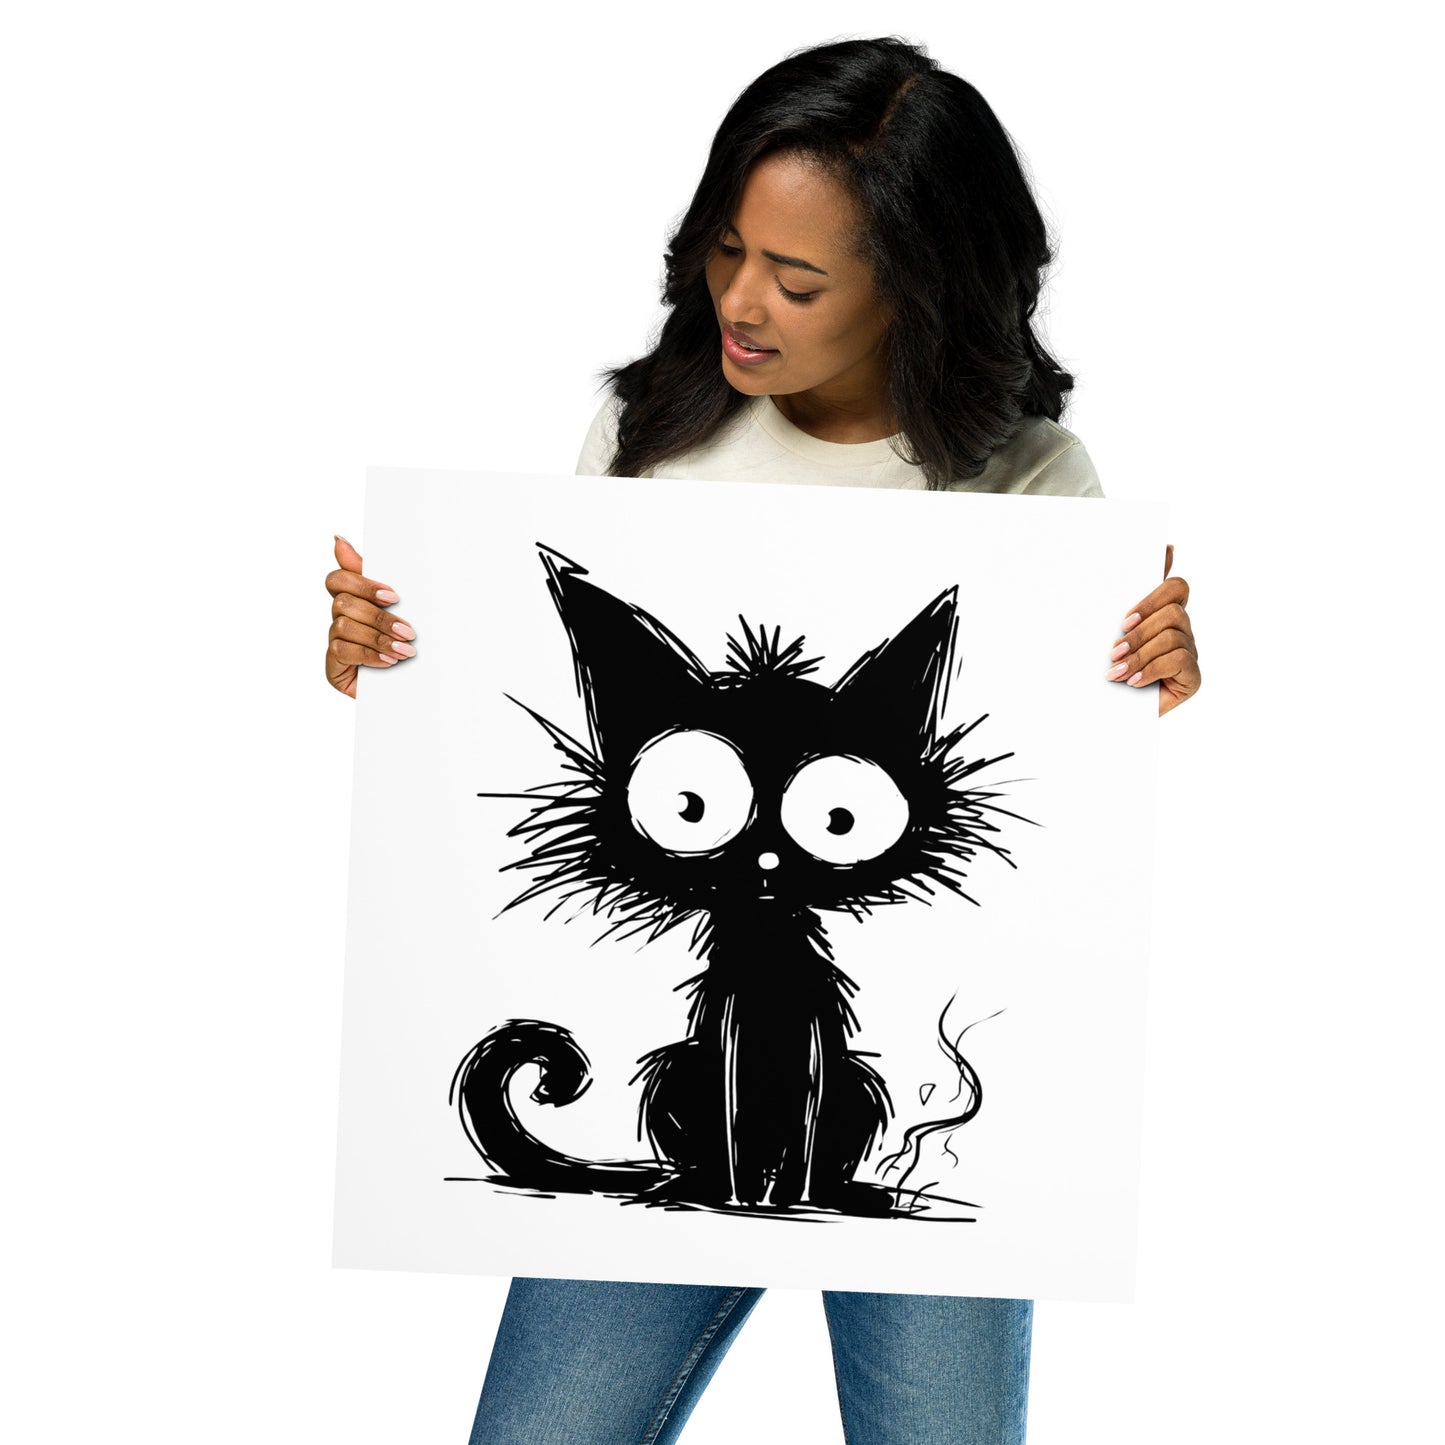 Whimsical Cat Art / Black Cat Poster Art